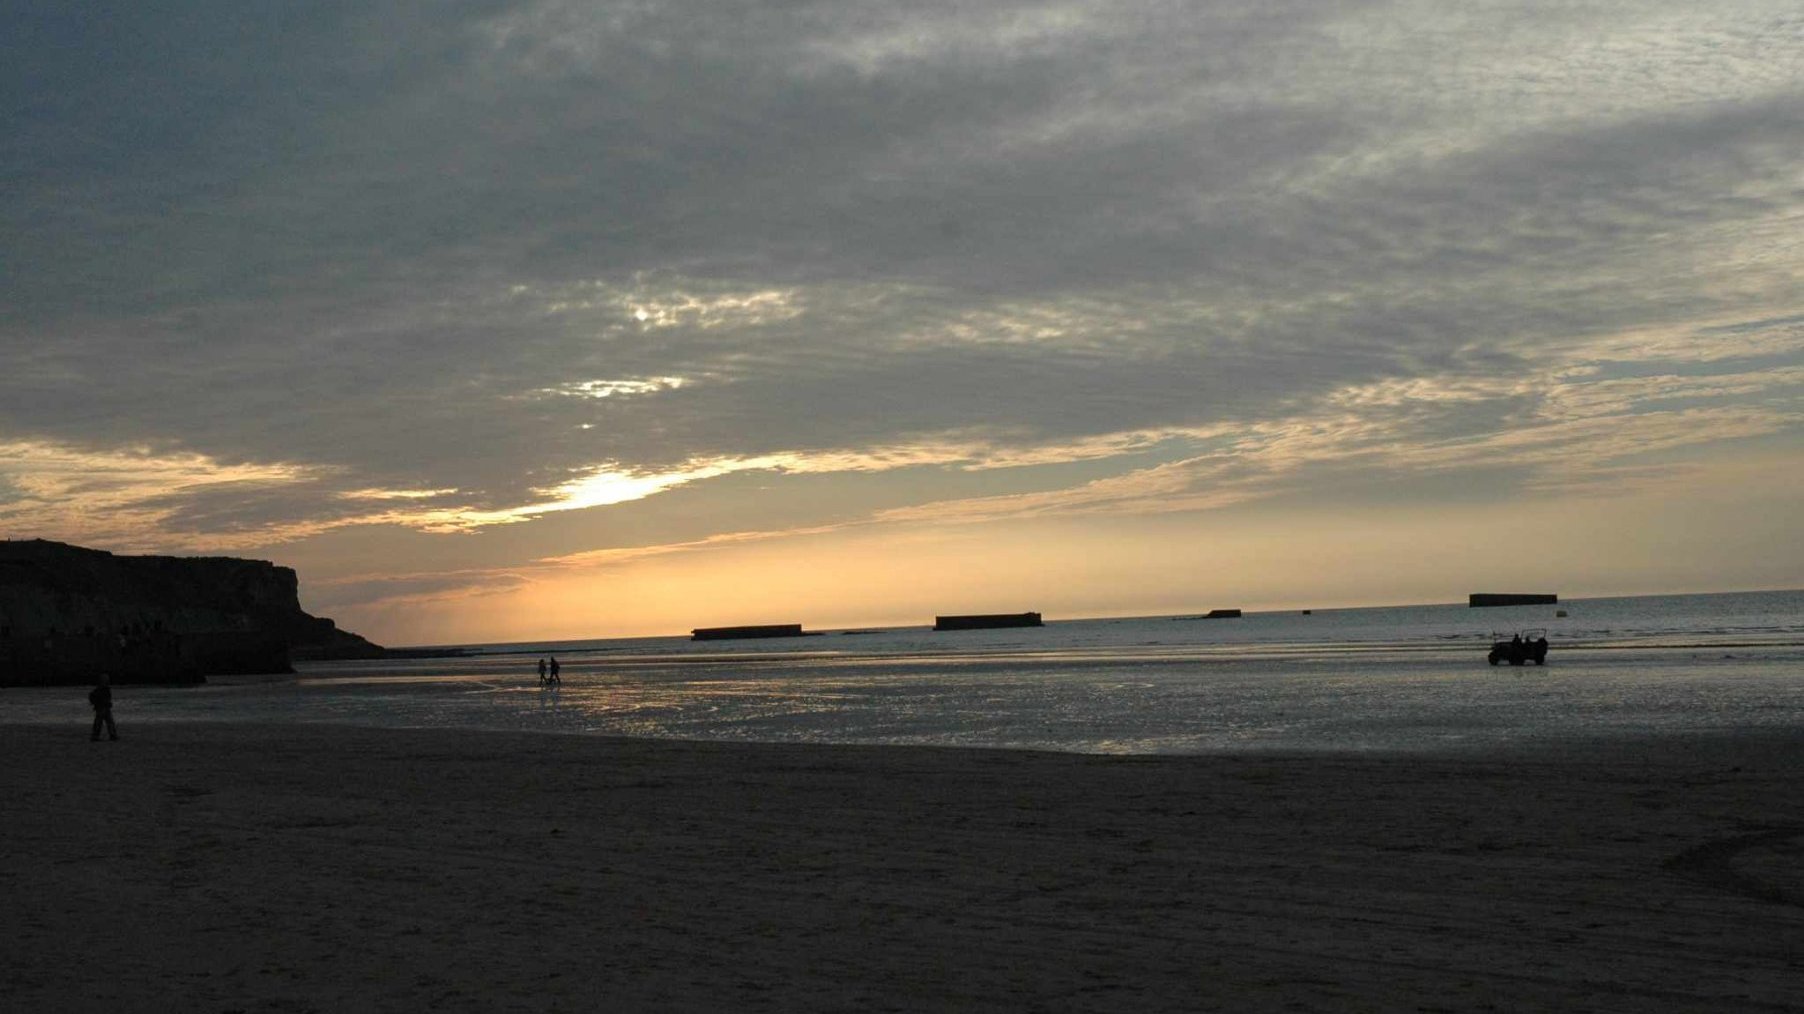 Powierzchnia morza o zachodzie słońca, w oddali rozproszone prostokątne kształty - pontony.